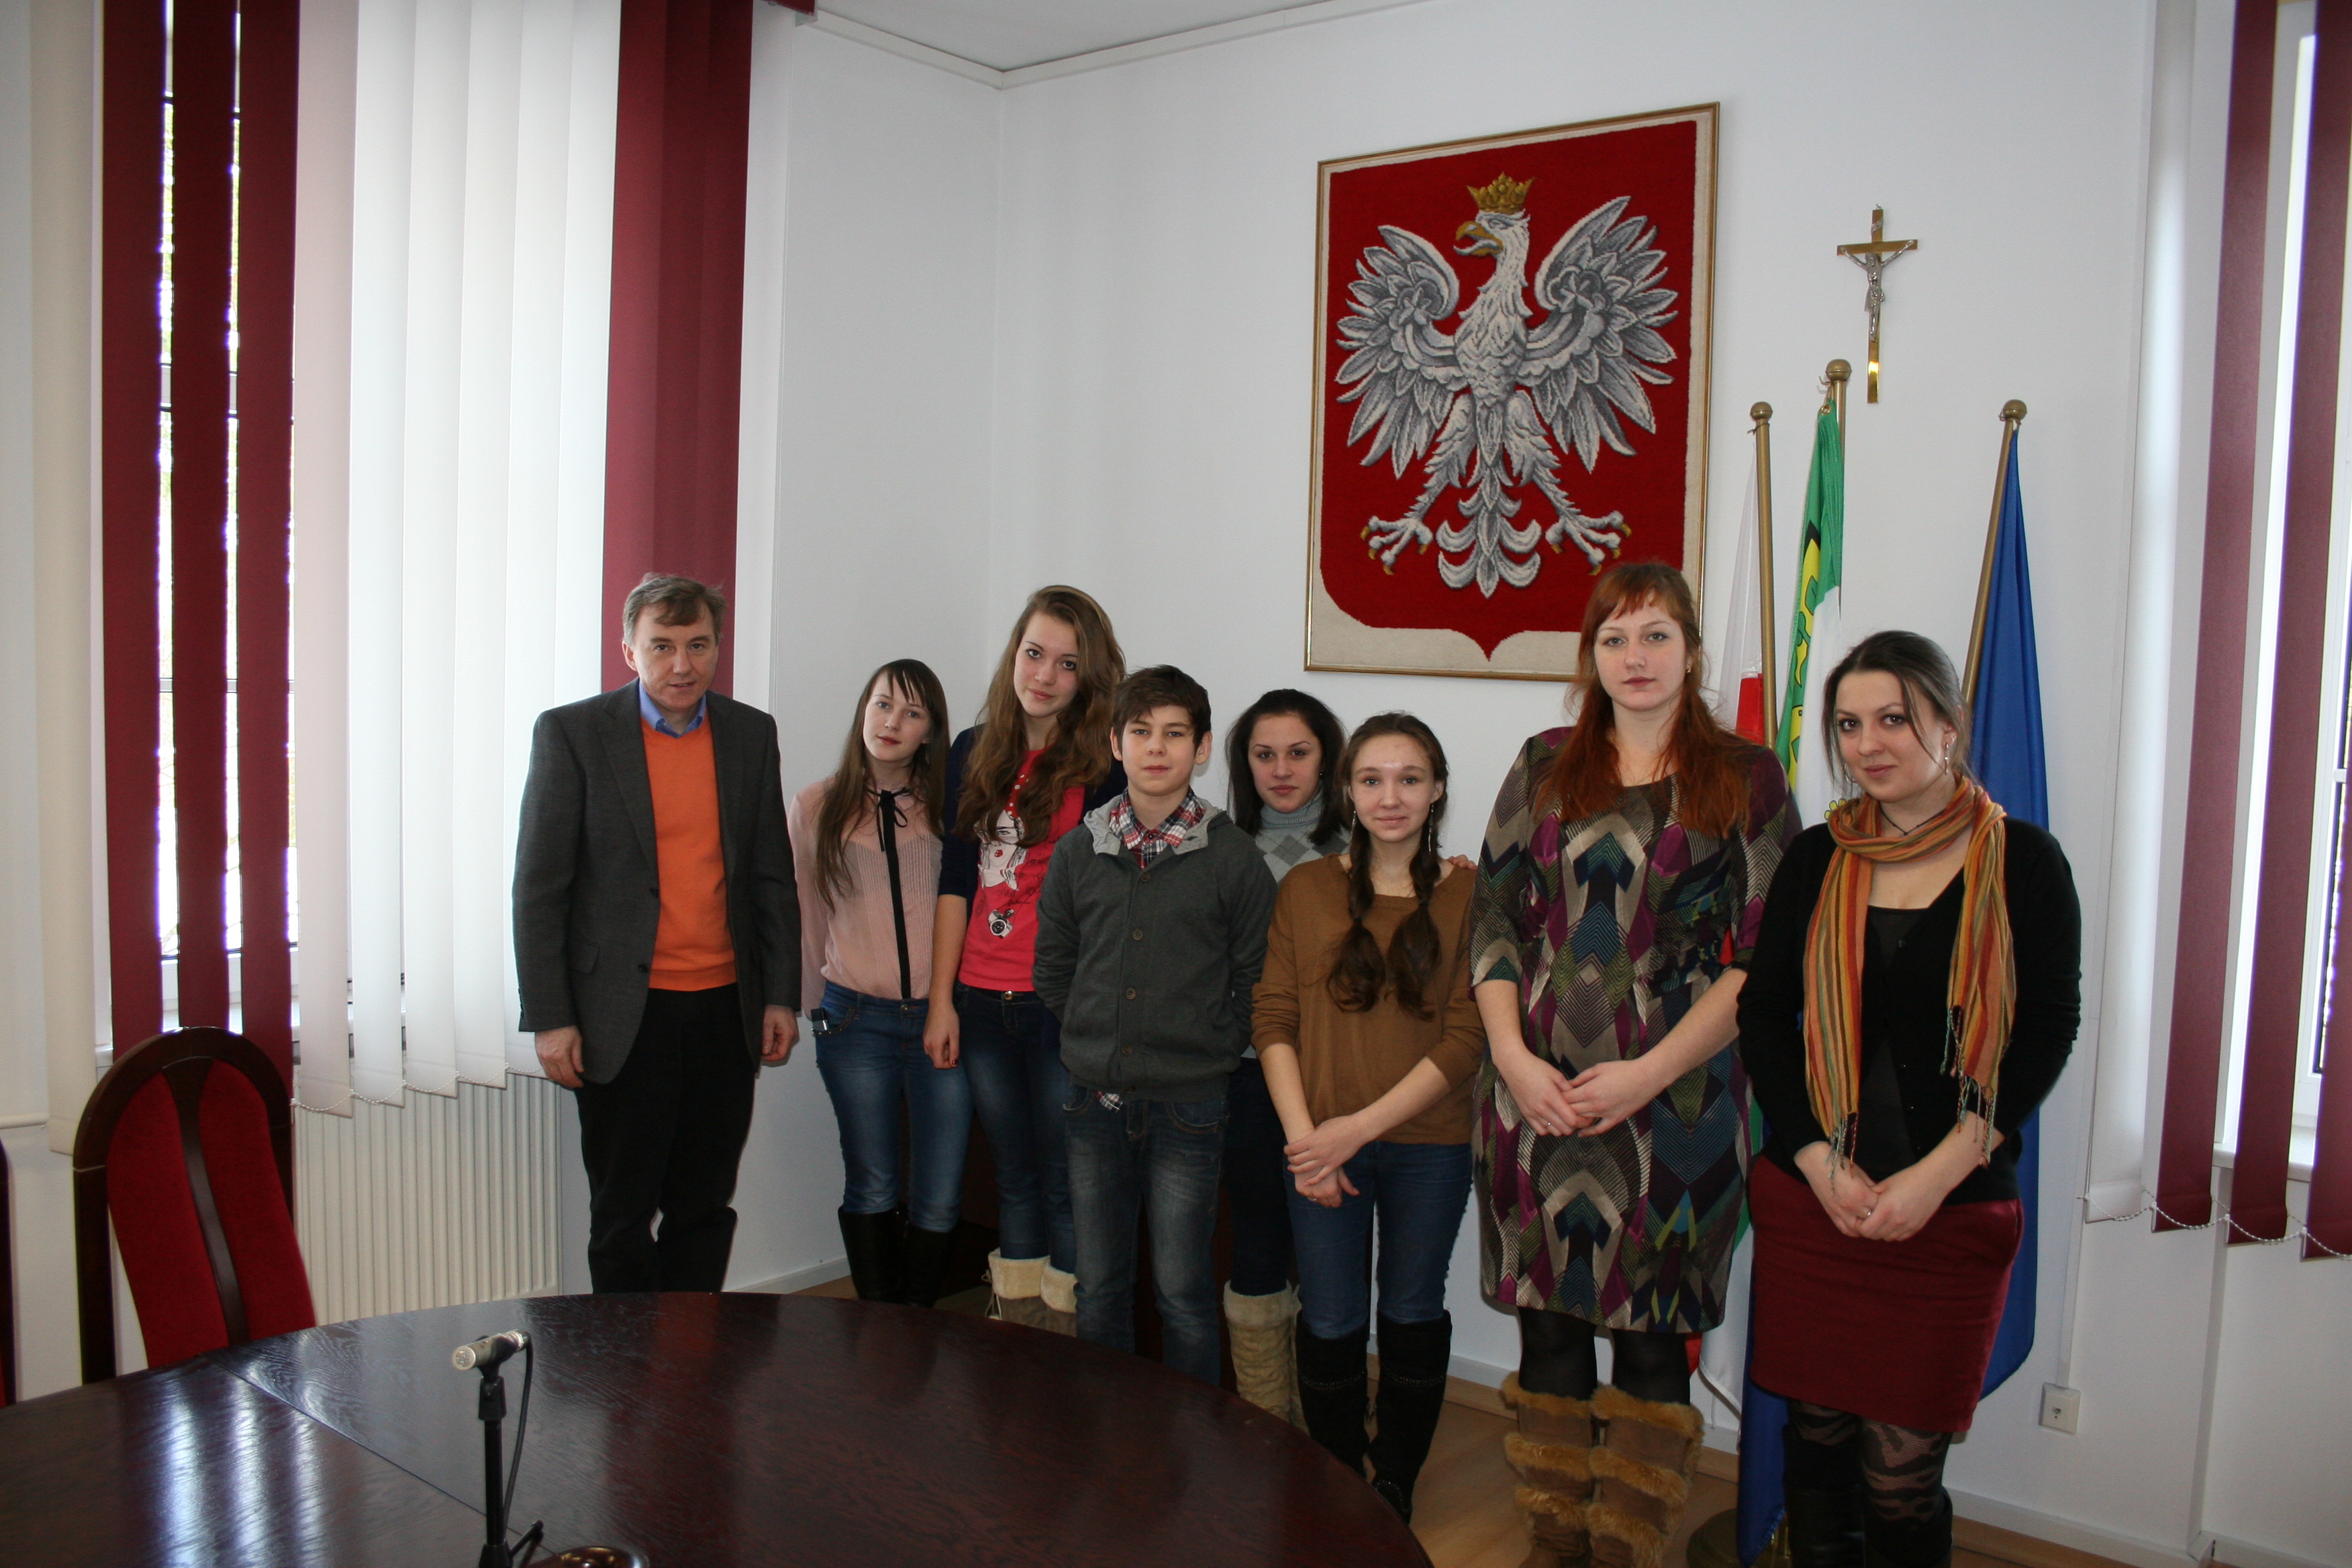 Młodzi Rosjanie z wizytą w Bornem Sulinowie